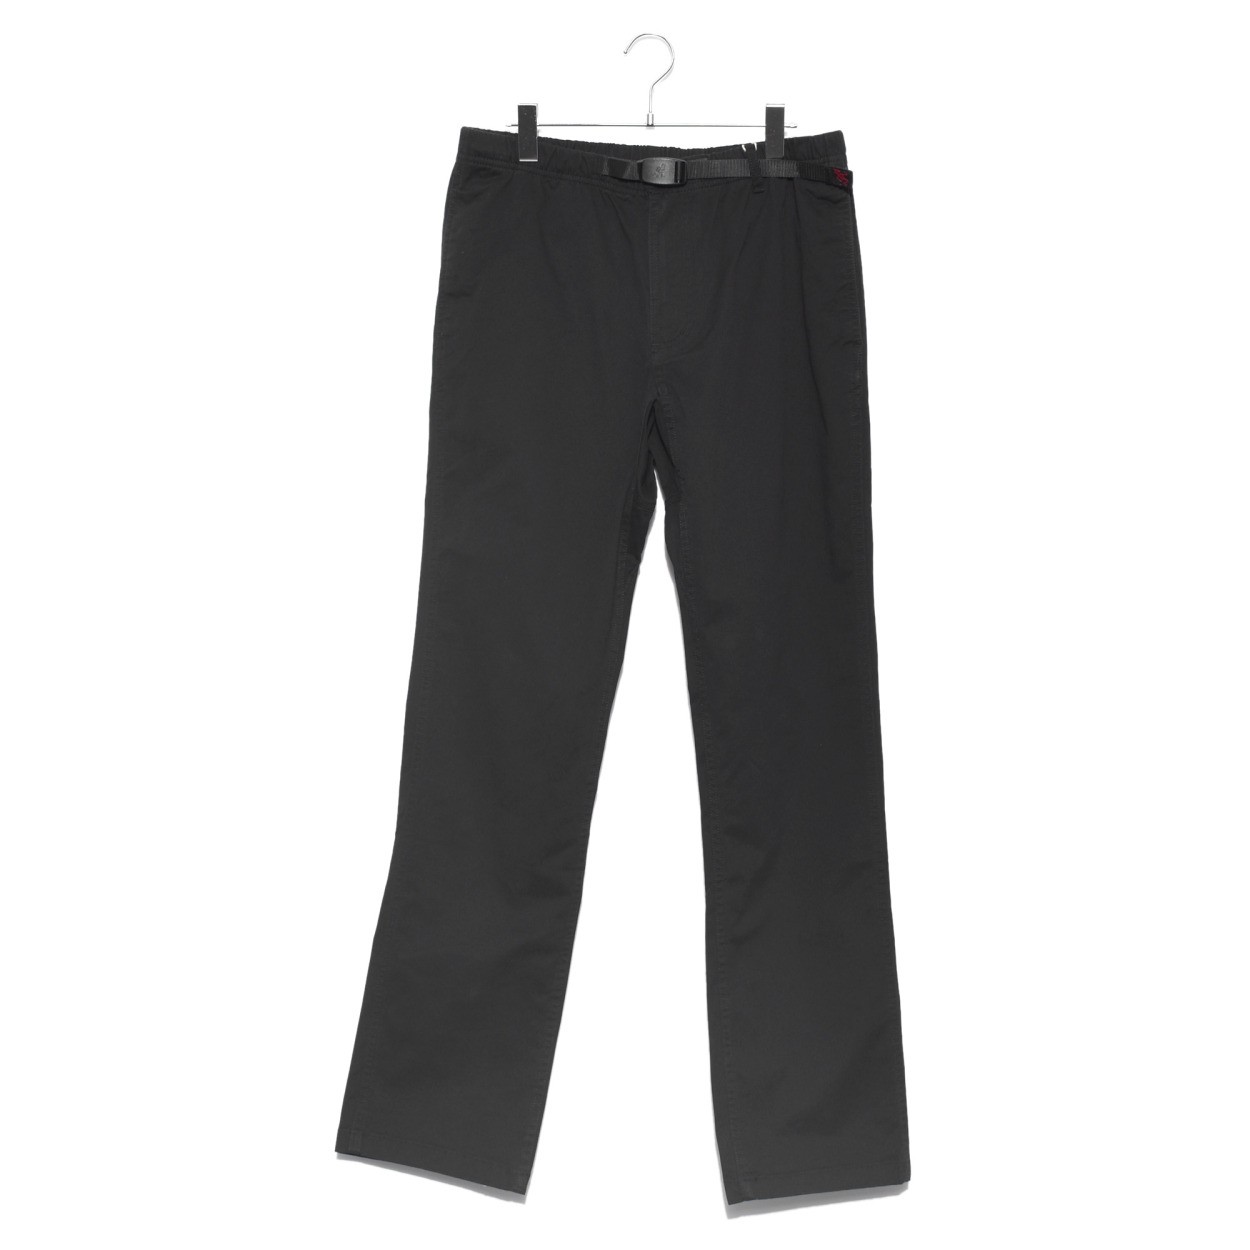 送料無料 グラミチ パンツ メンズ ニューナローパンツ GRAMICCI 0816-FDJ 黒 ネイビー 紺 ボトムス カジュアル シンプル ズボン